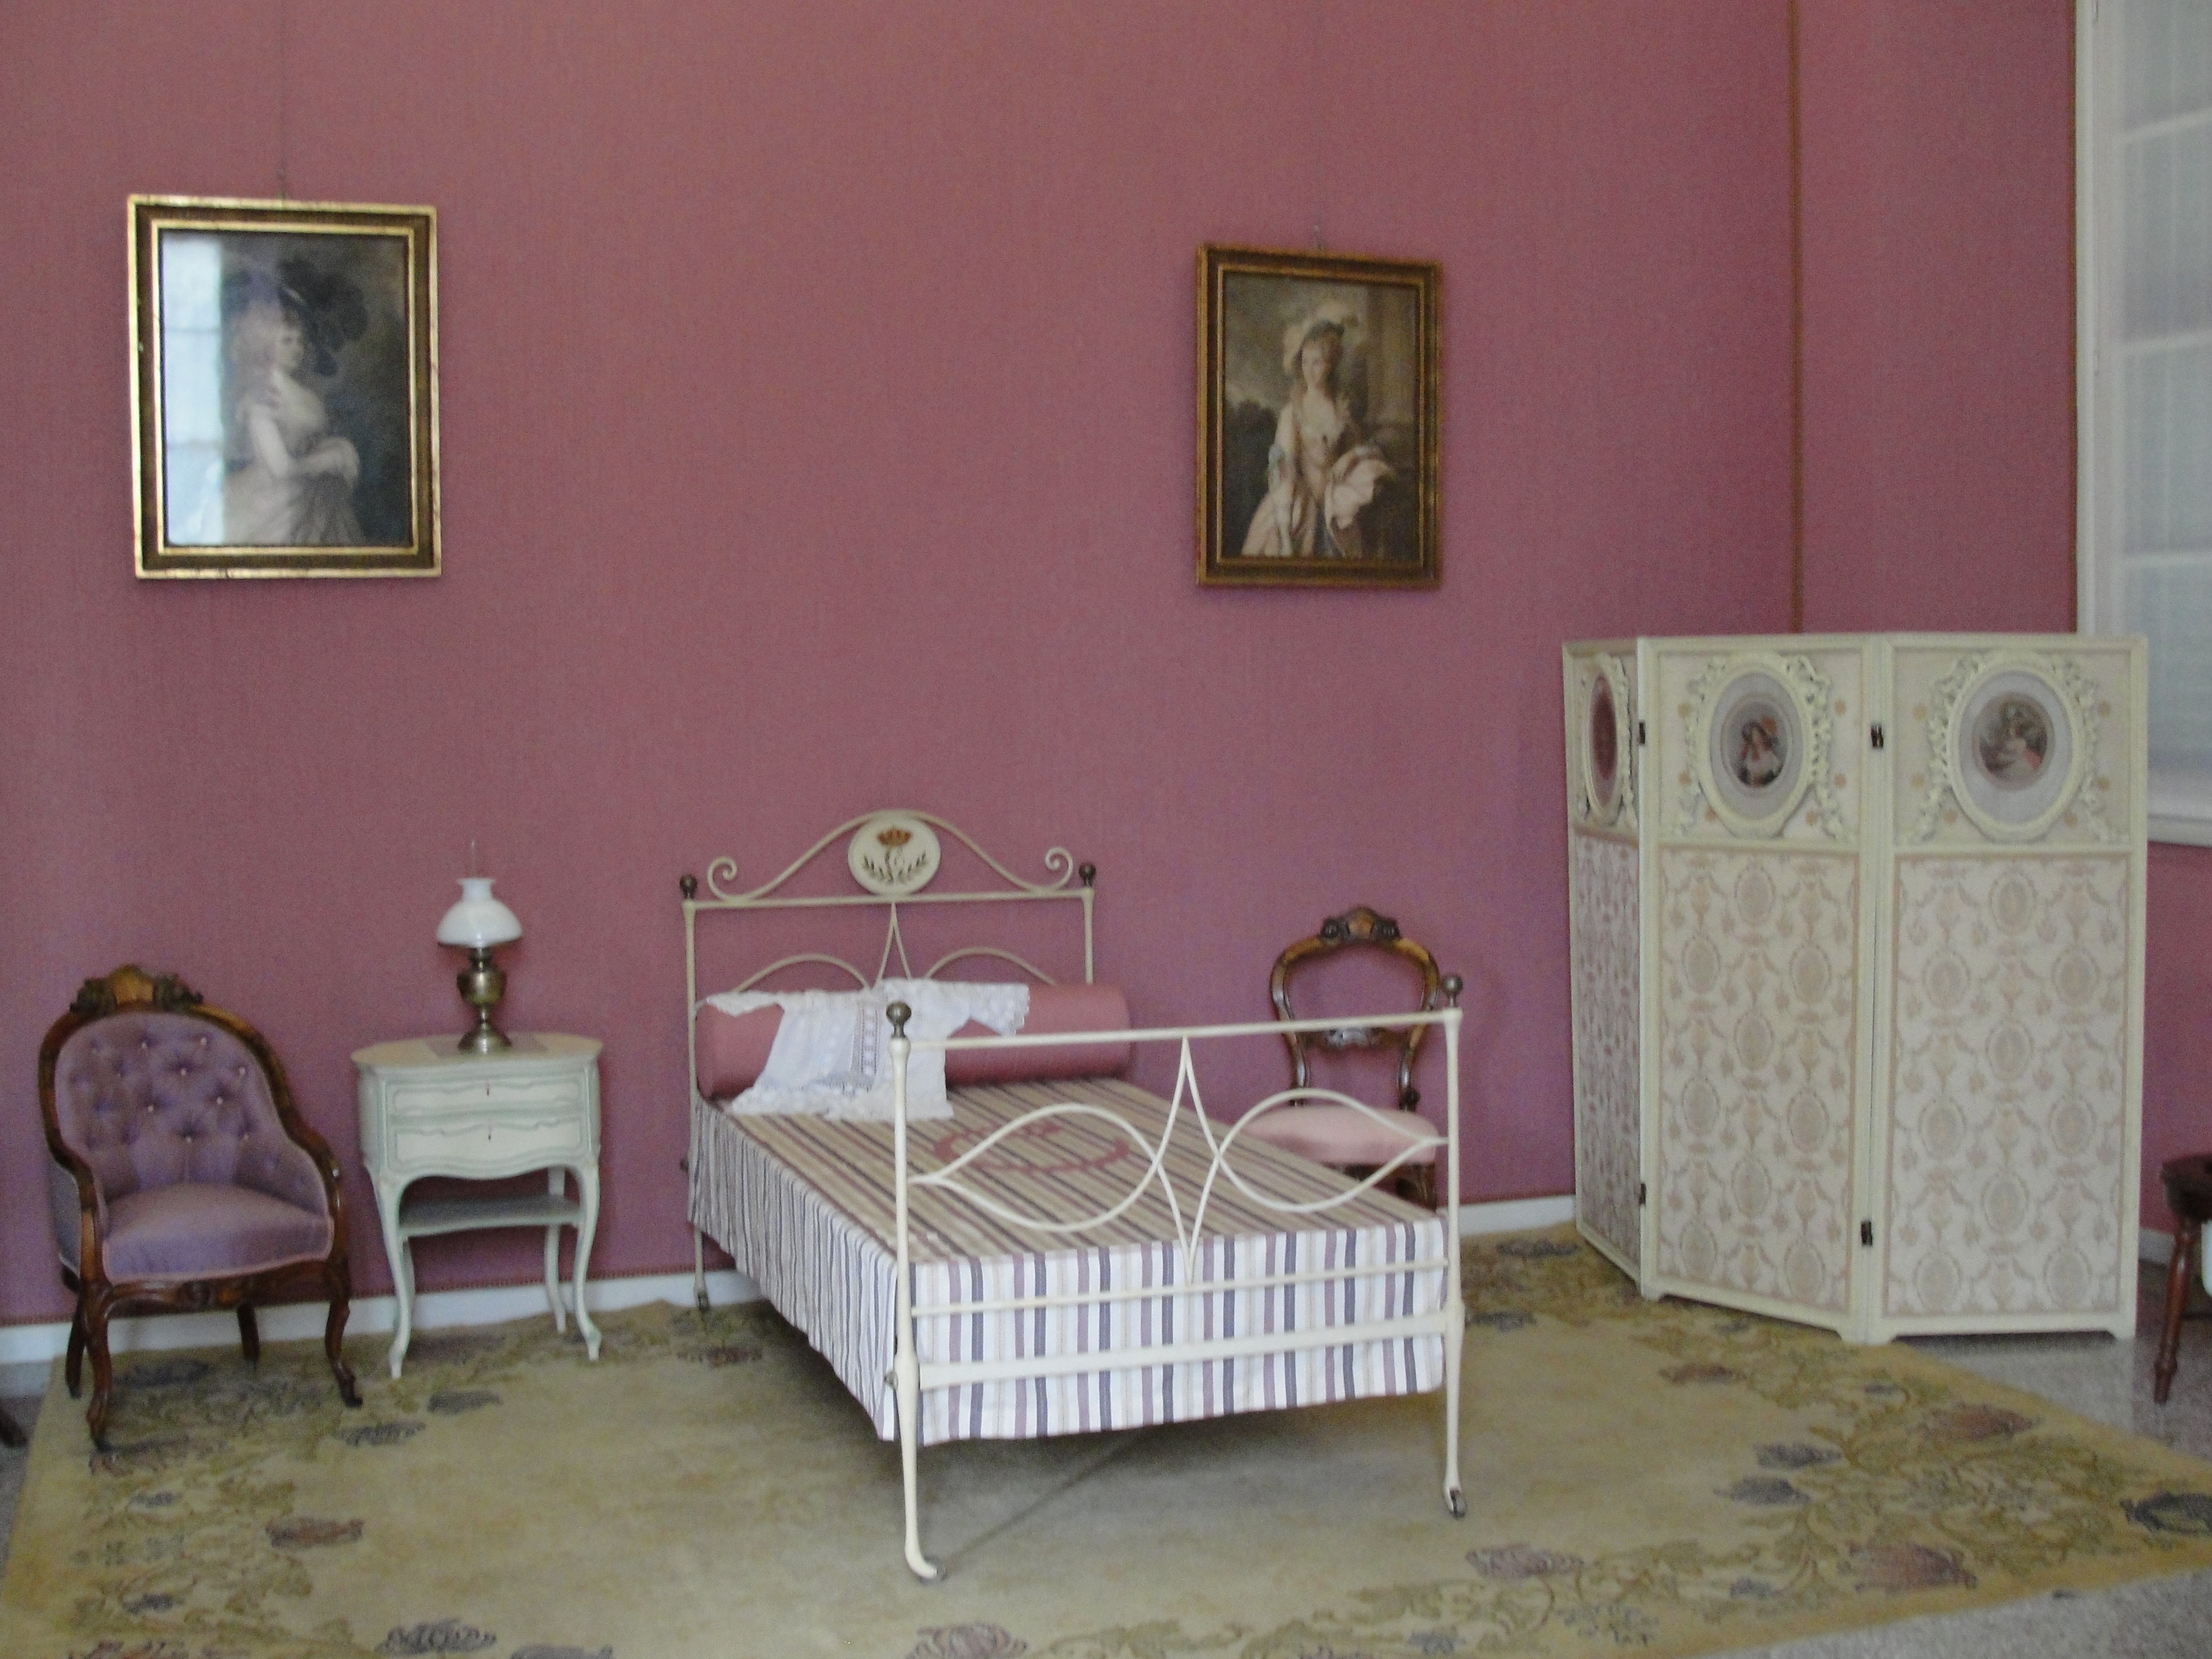 Carlotta's room - La stanza di Carlotta